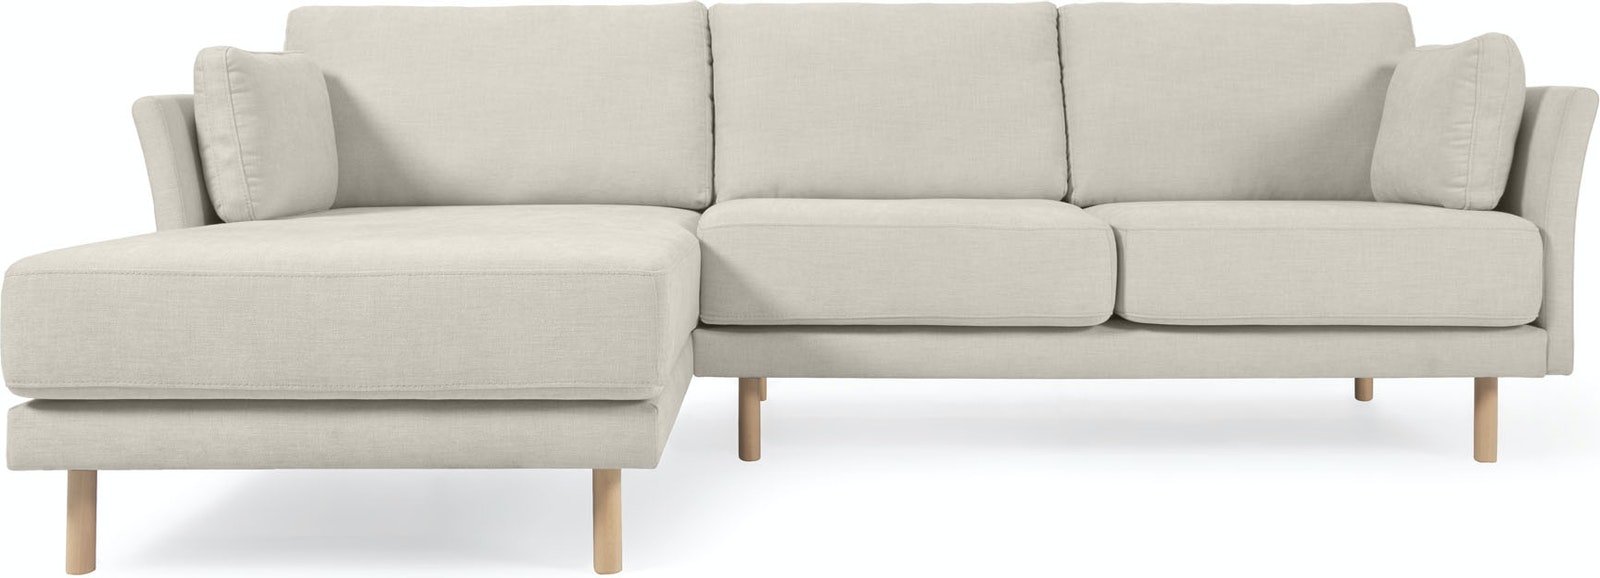 Gilma, Højre/Venstre chaiselong, 3-personers sofa by LaForma (H: 83 cm. B: 261 cm. L: 158 cm., Beige/Natur)